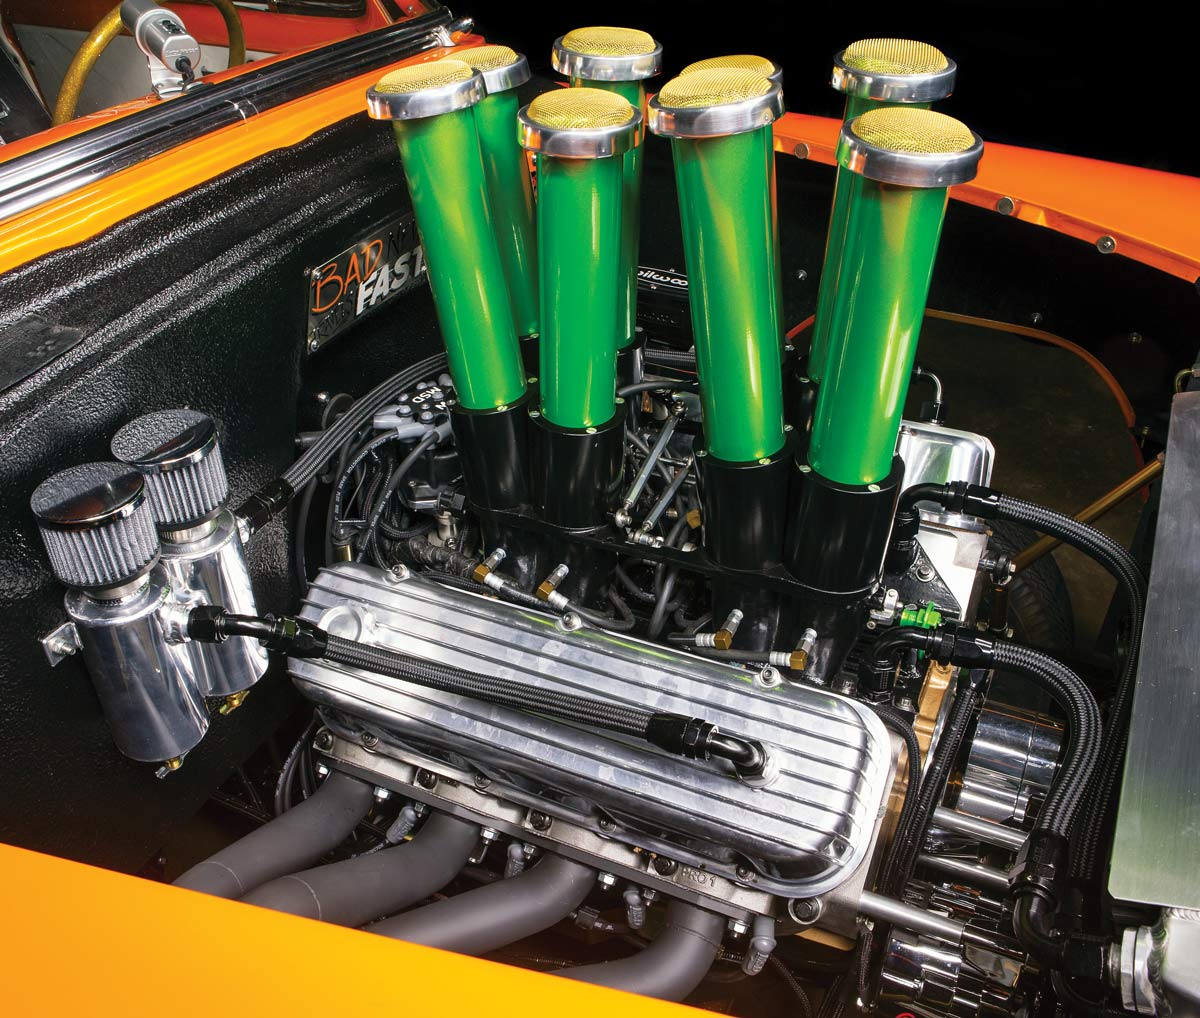 ’54 Chevy Gasser's engine